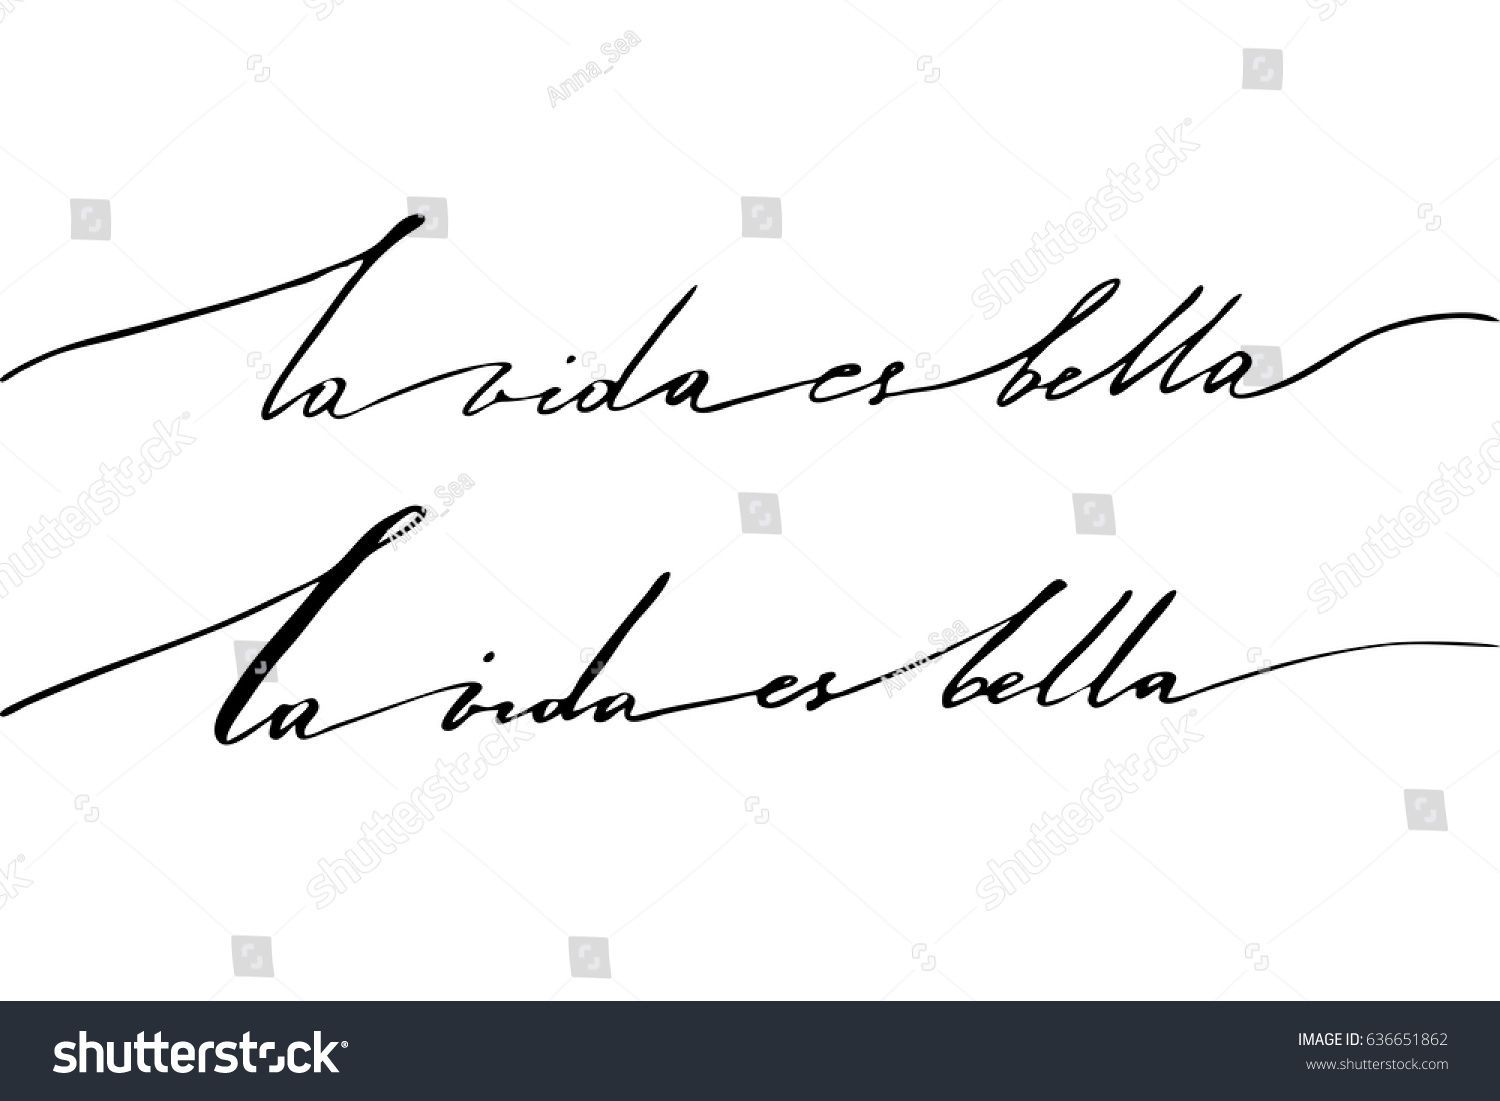 Стоковая векторная графика «Spanish Phrase Calligraphy Writing Life Beautiful» (без лицензионных платежей), 636651862 - Стоковая векторная графика «Spanish Phrase Calligraphy Writing Life Beautiful» (без лицензионных платежей), 636651862 -   17 beauty Background for writing ideas